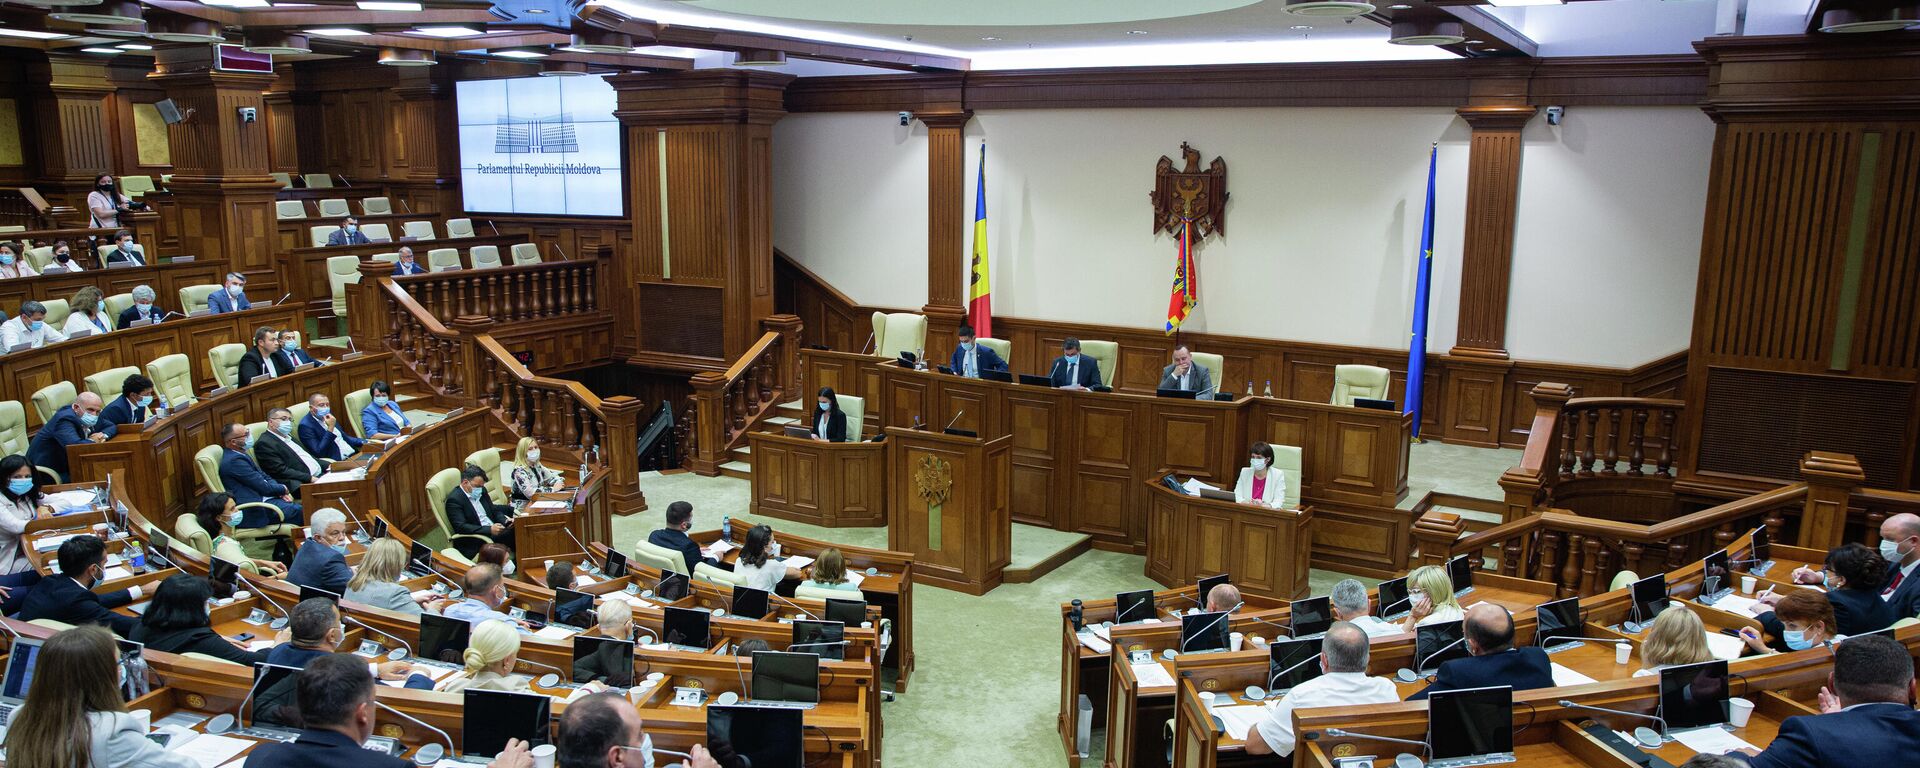 Deputați în Parlamentul Republicii Moldova  - Sputnik Moldova, 1920, 07.10.2021